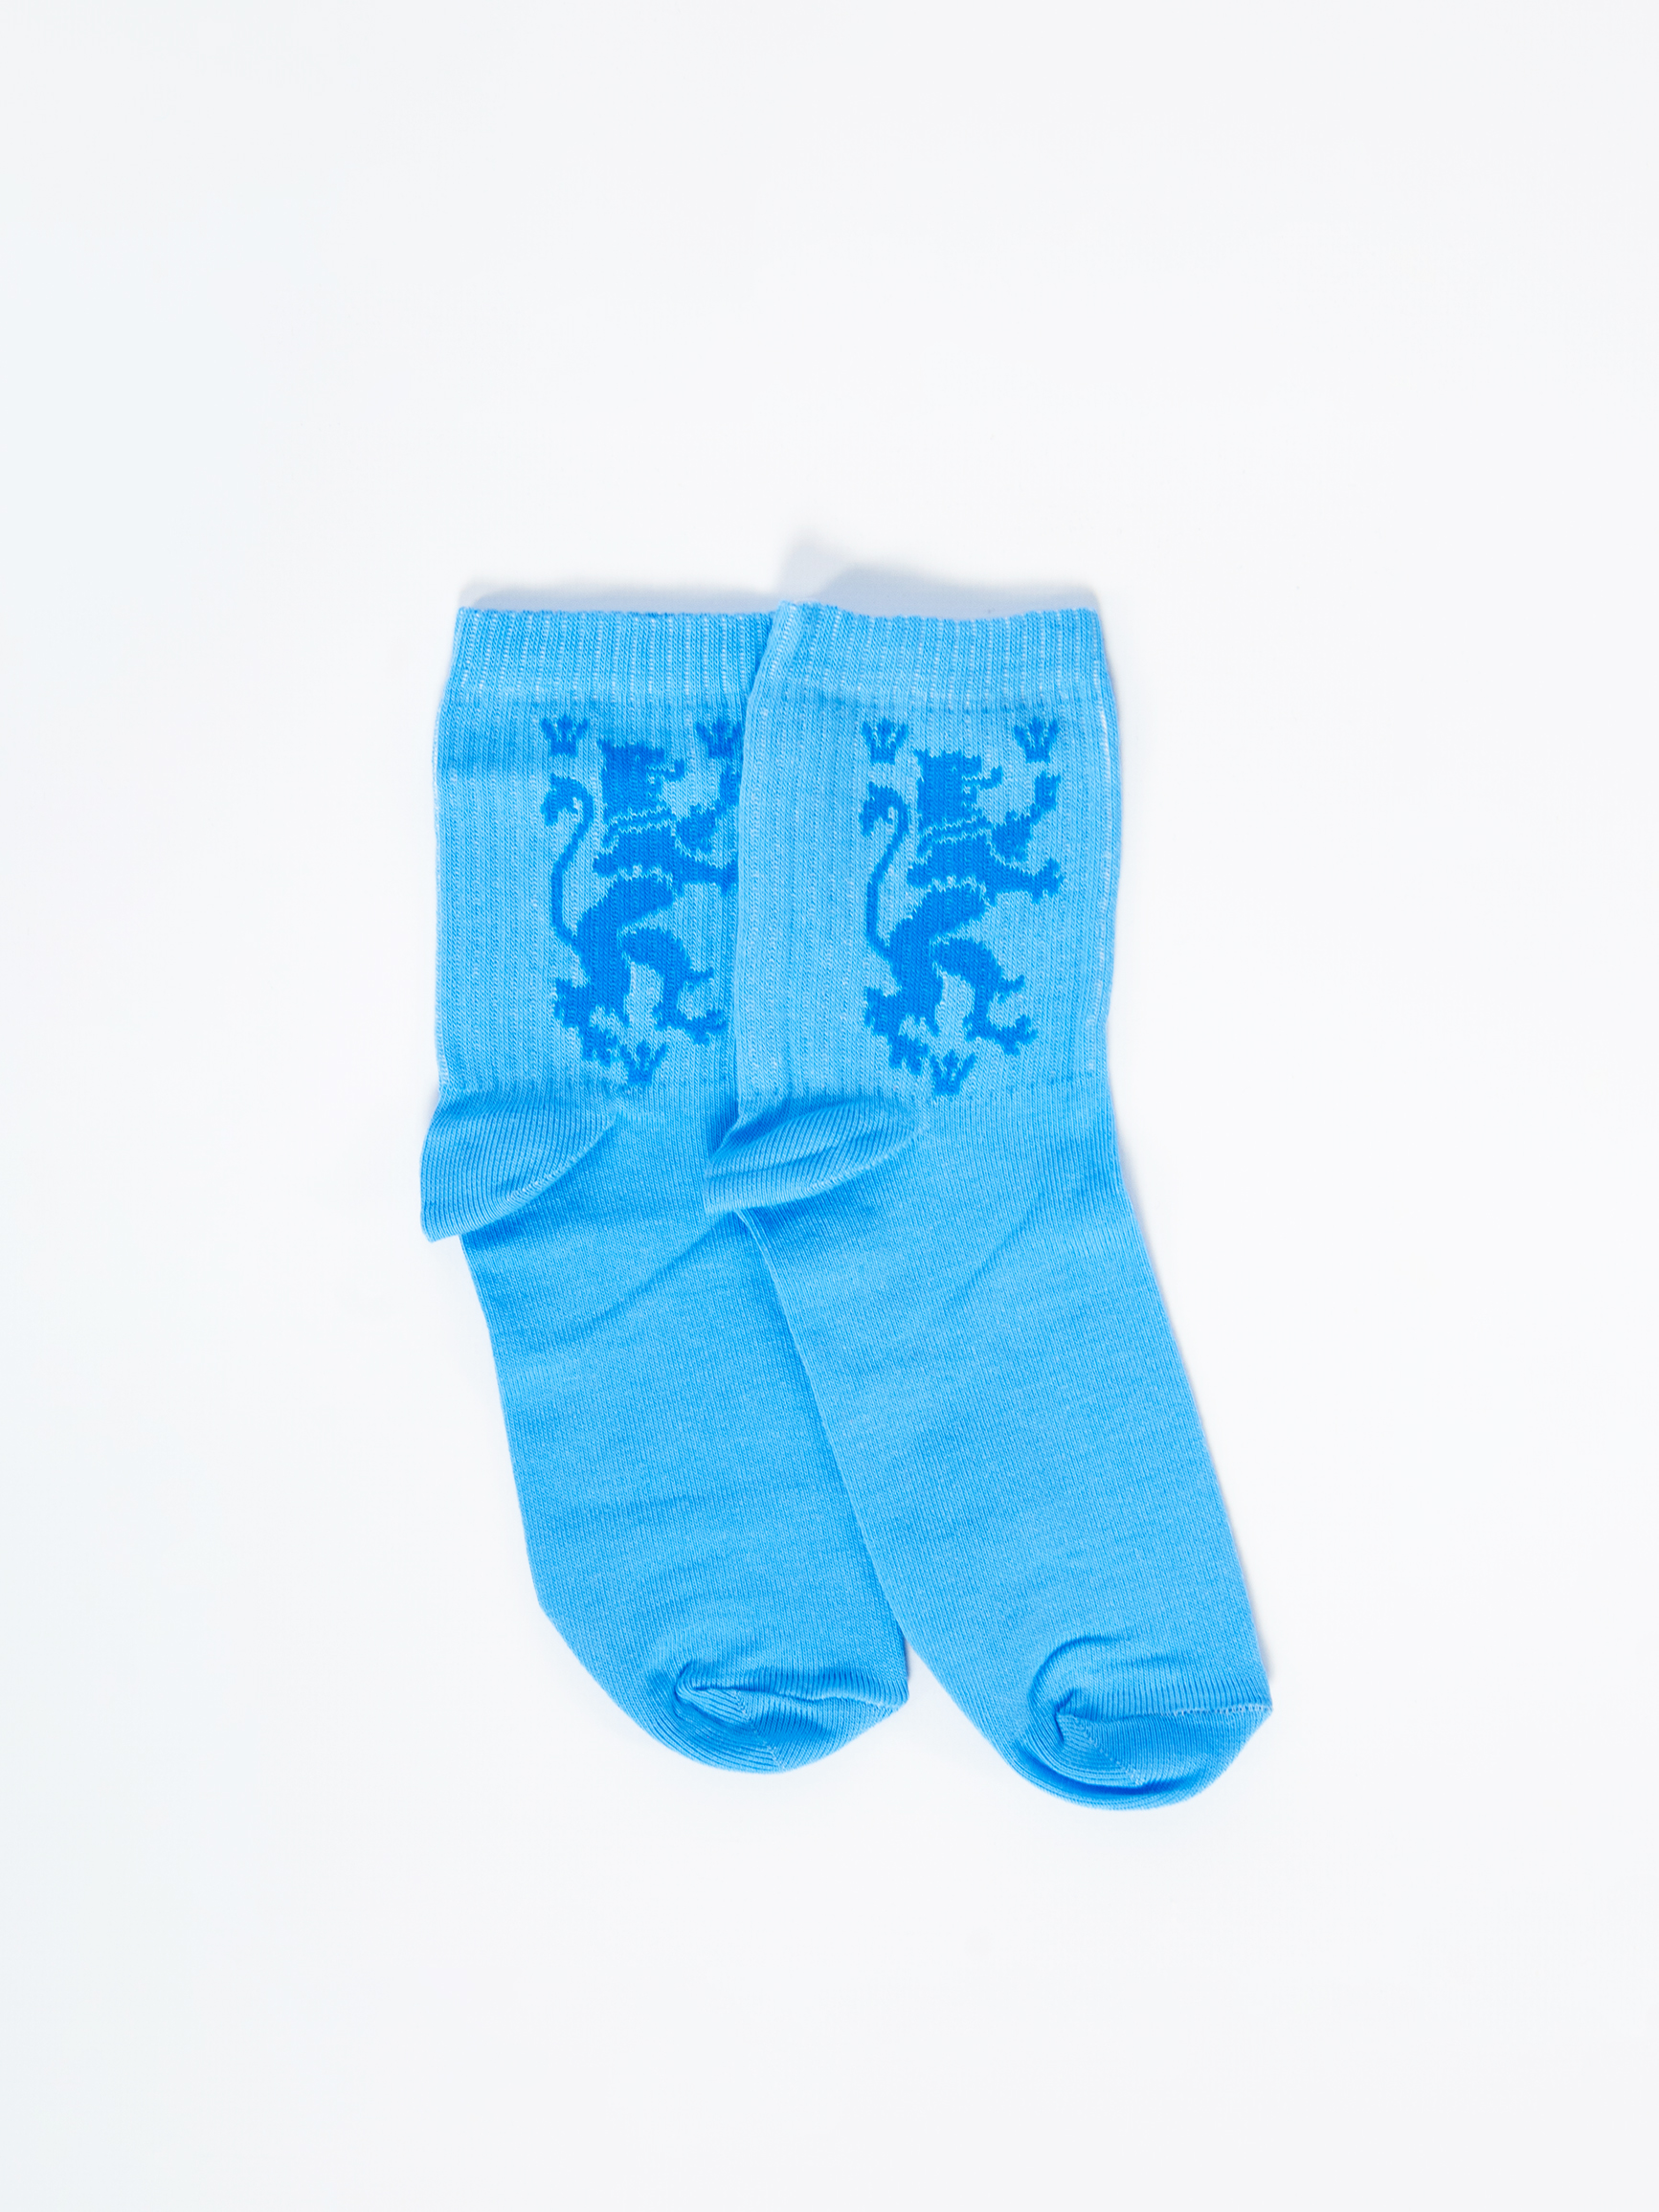 Шкарпетки Лев. Колір блакитний. 2.